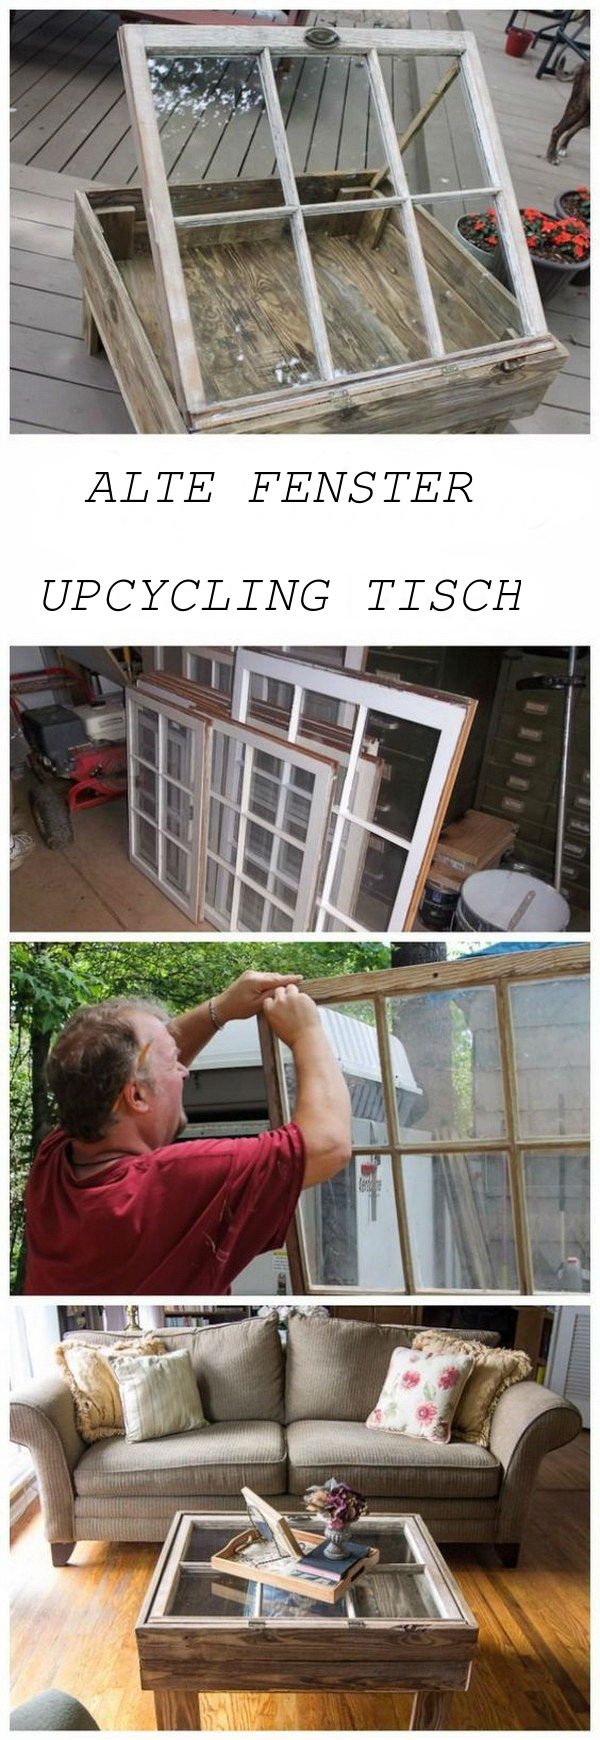 DIY Upcycling Tisch aus altem Fenster